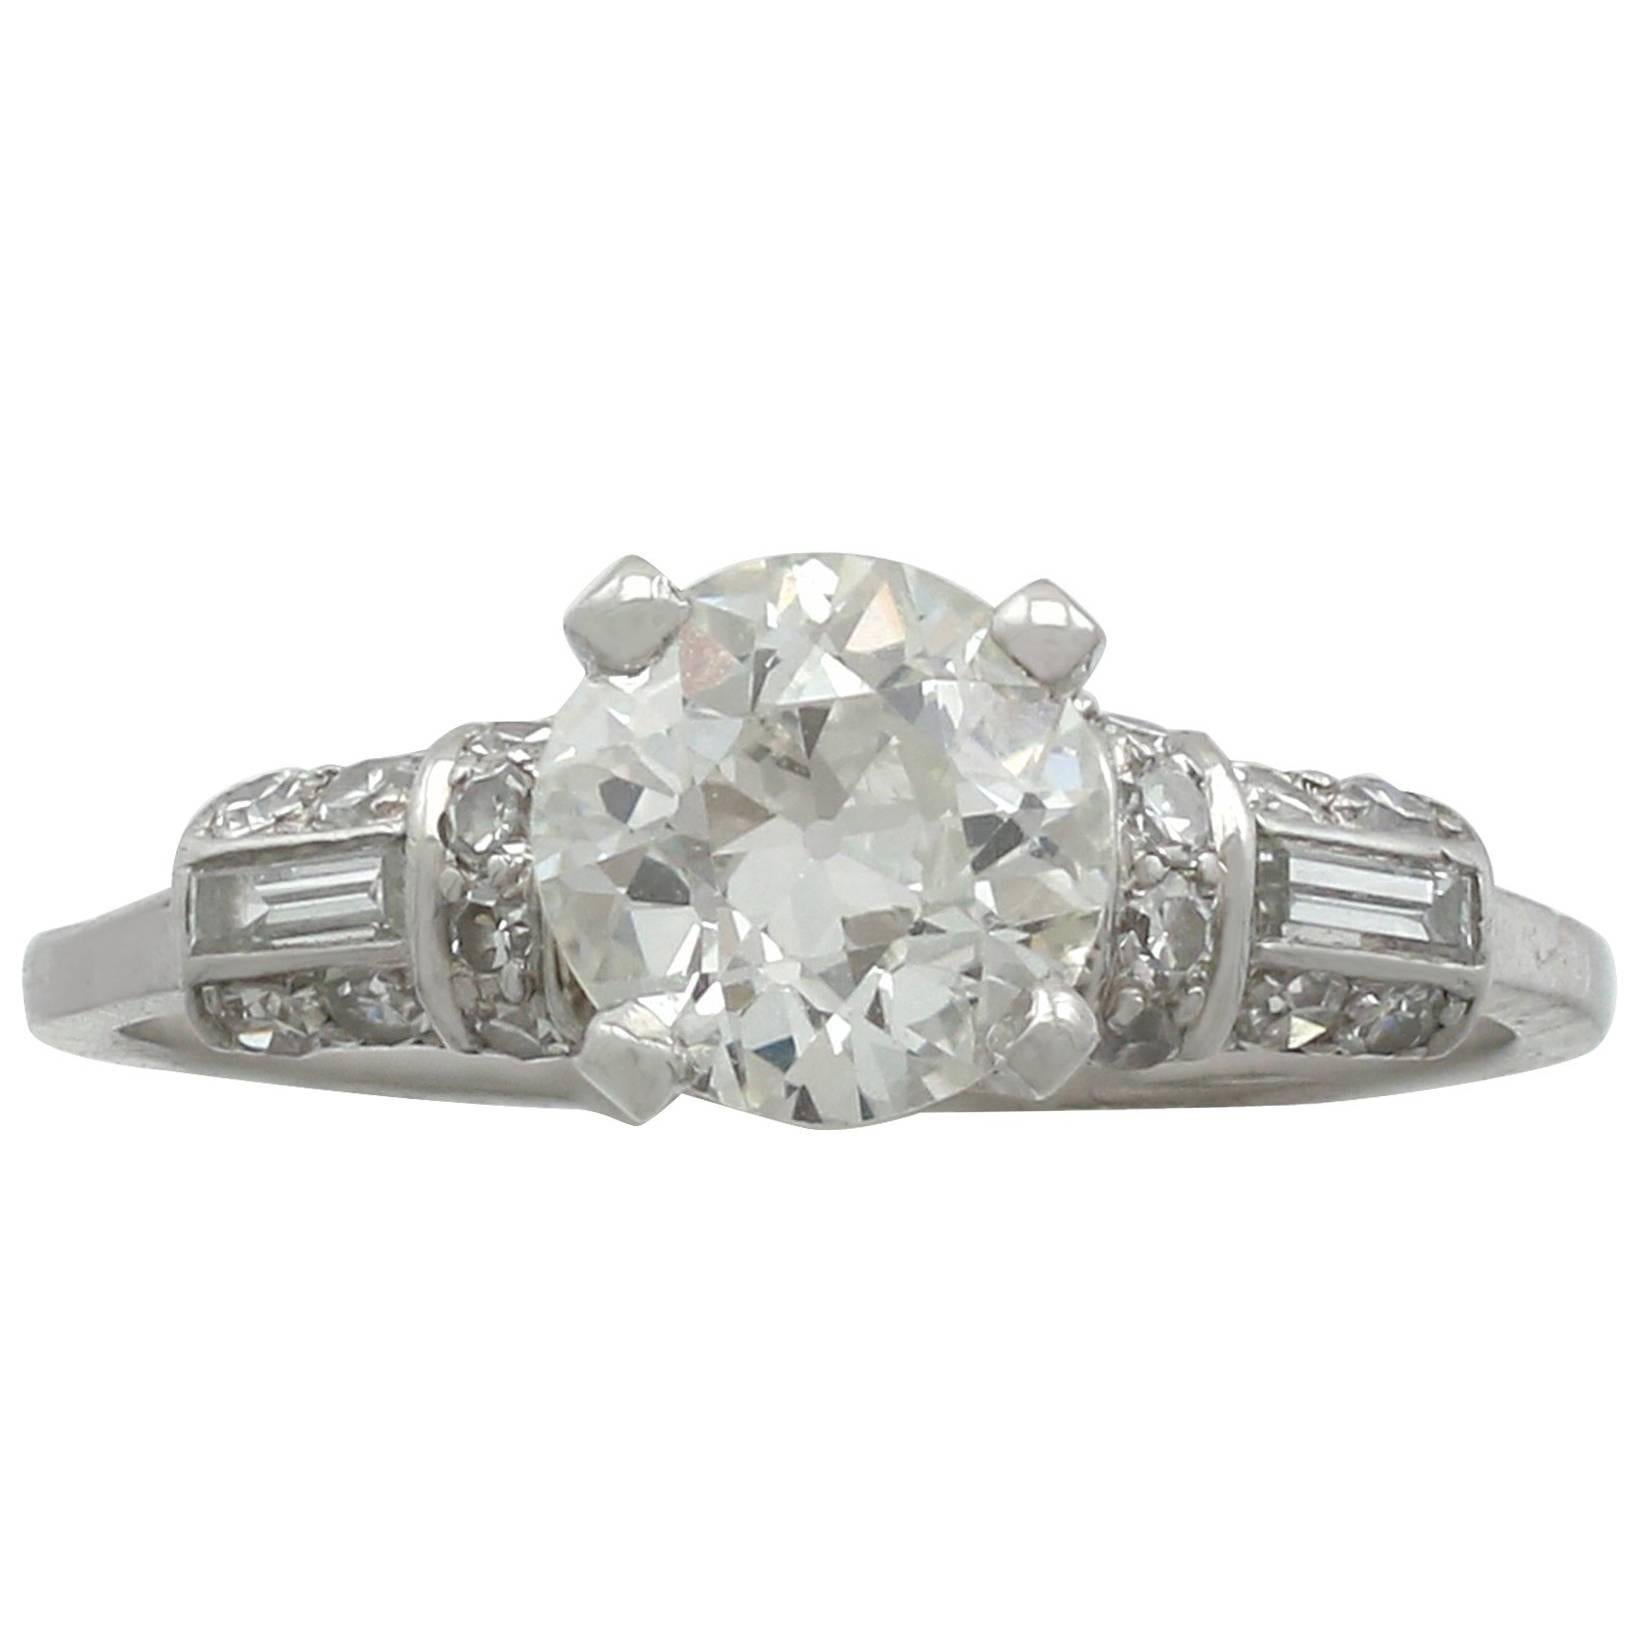 1940s 1.09 Carat Diamond and Platinum Solitaire Ring